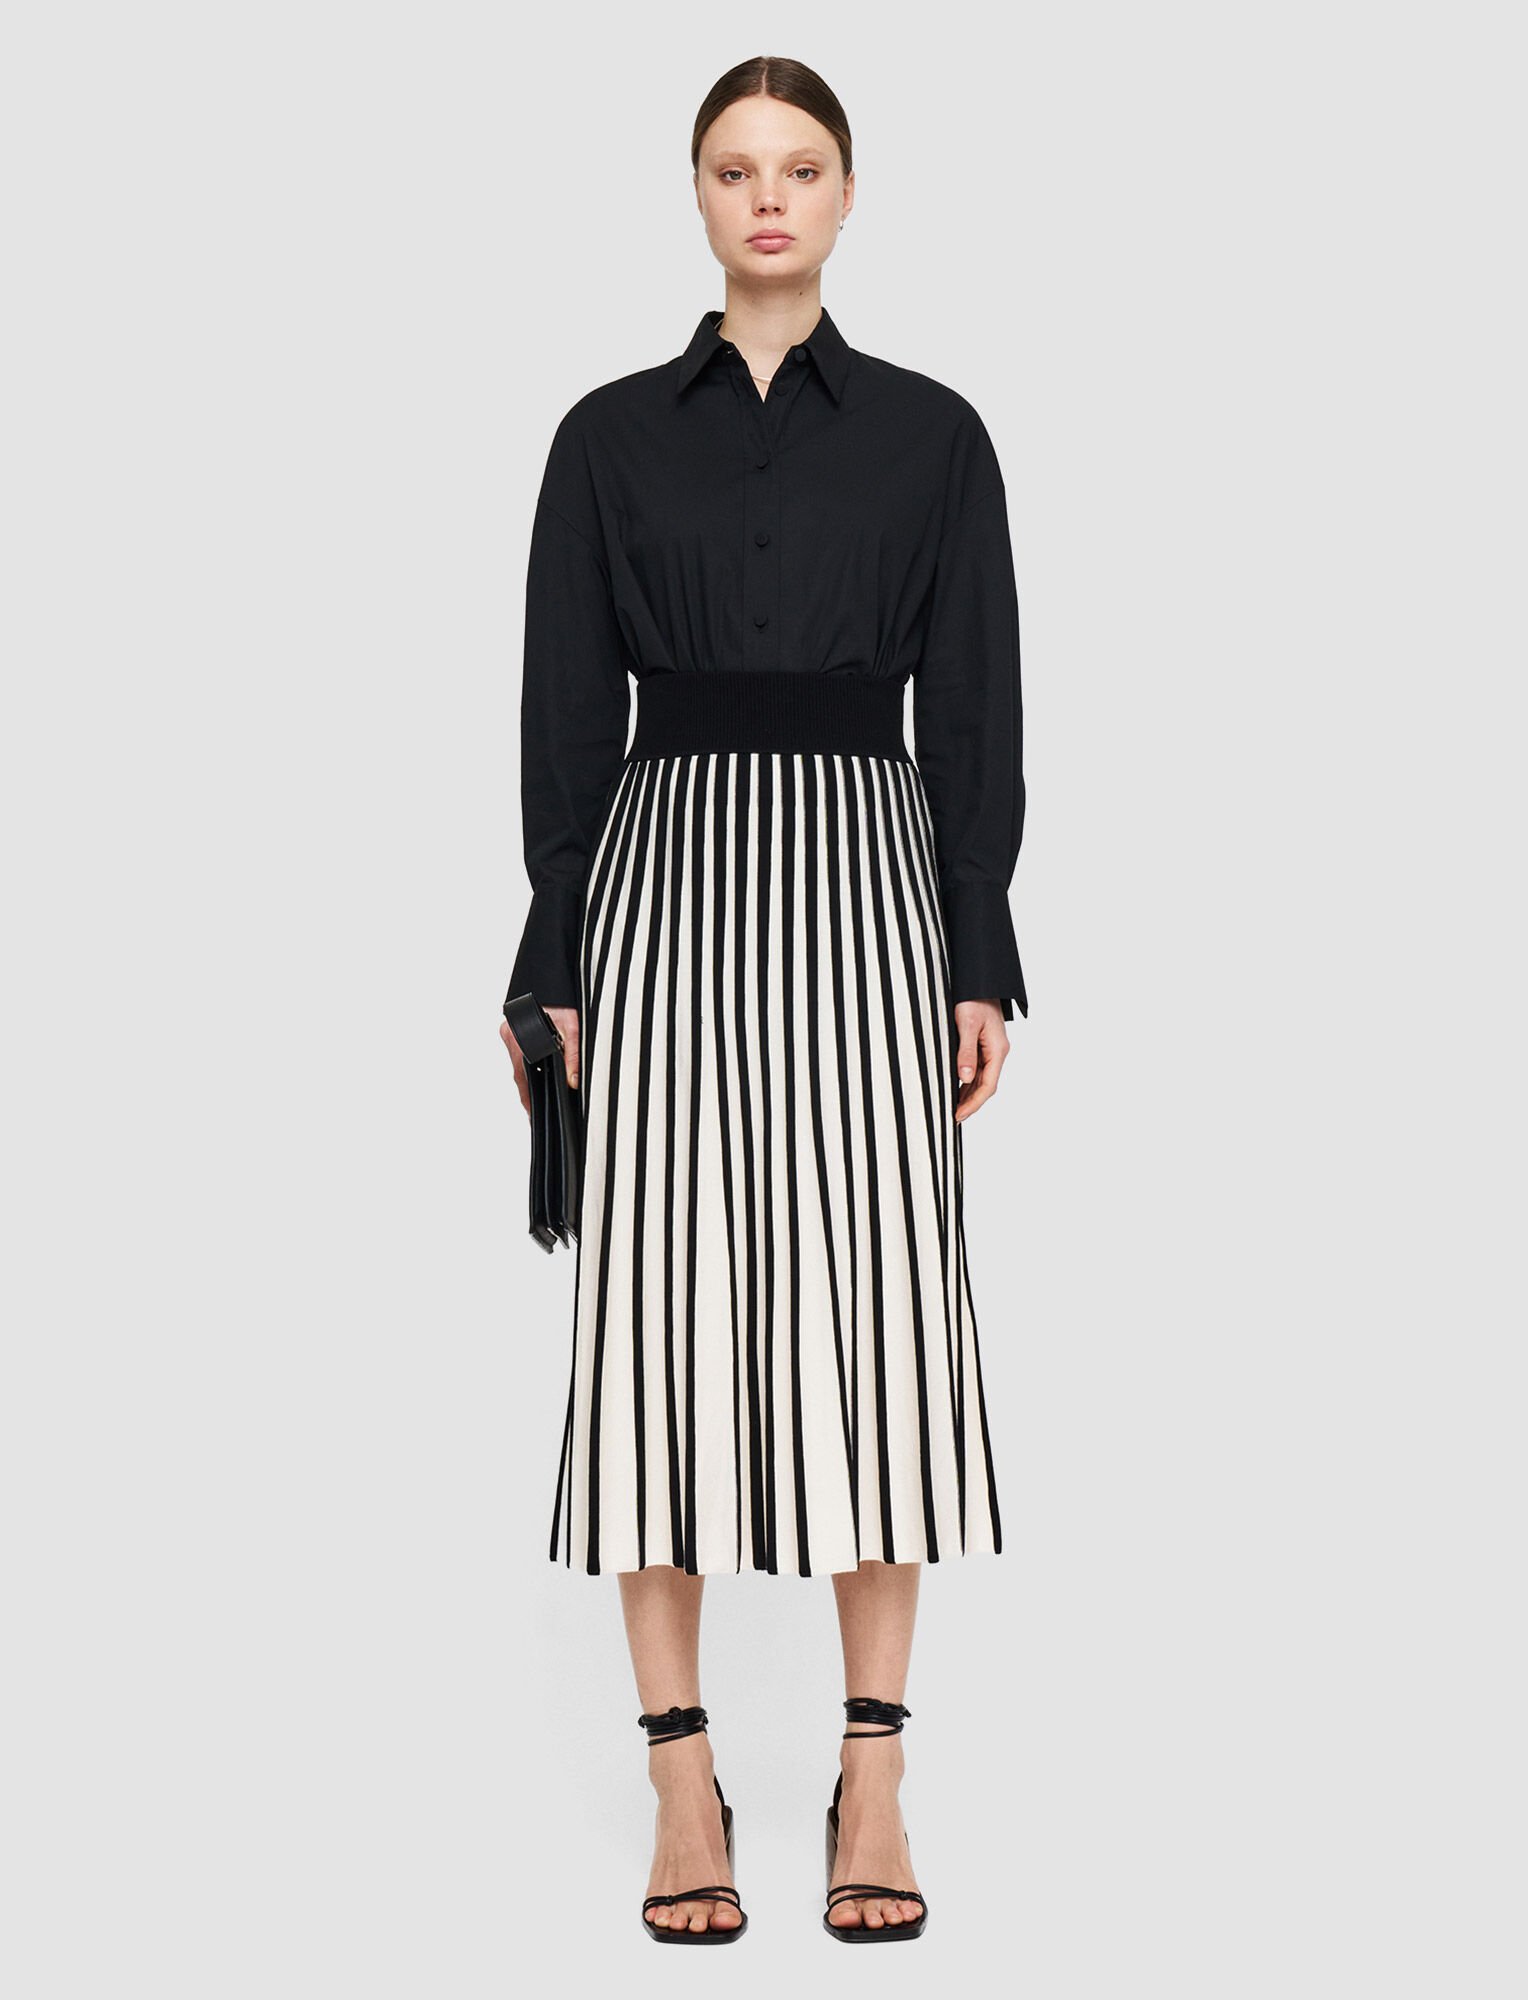 Joseph, Stripes Skirt, in Oyster White/Black